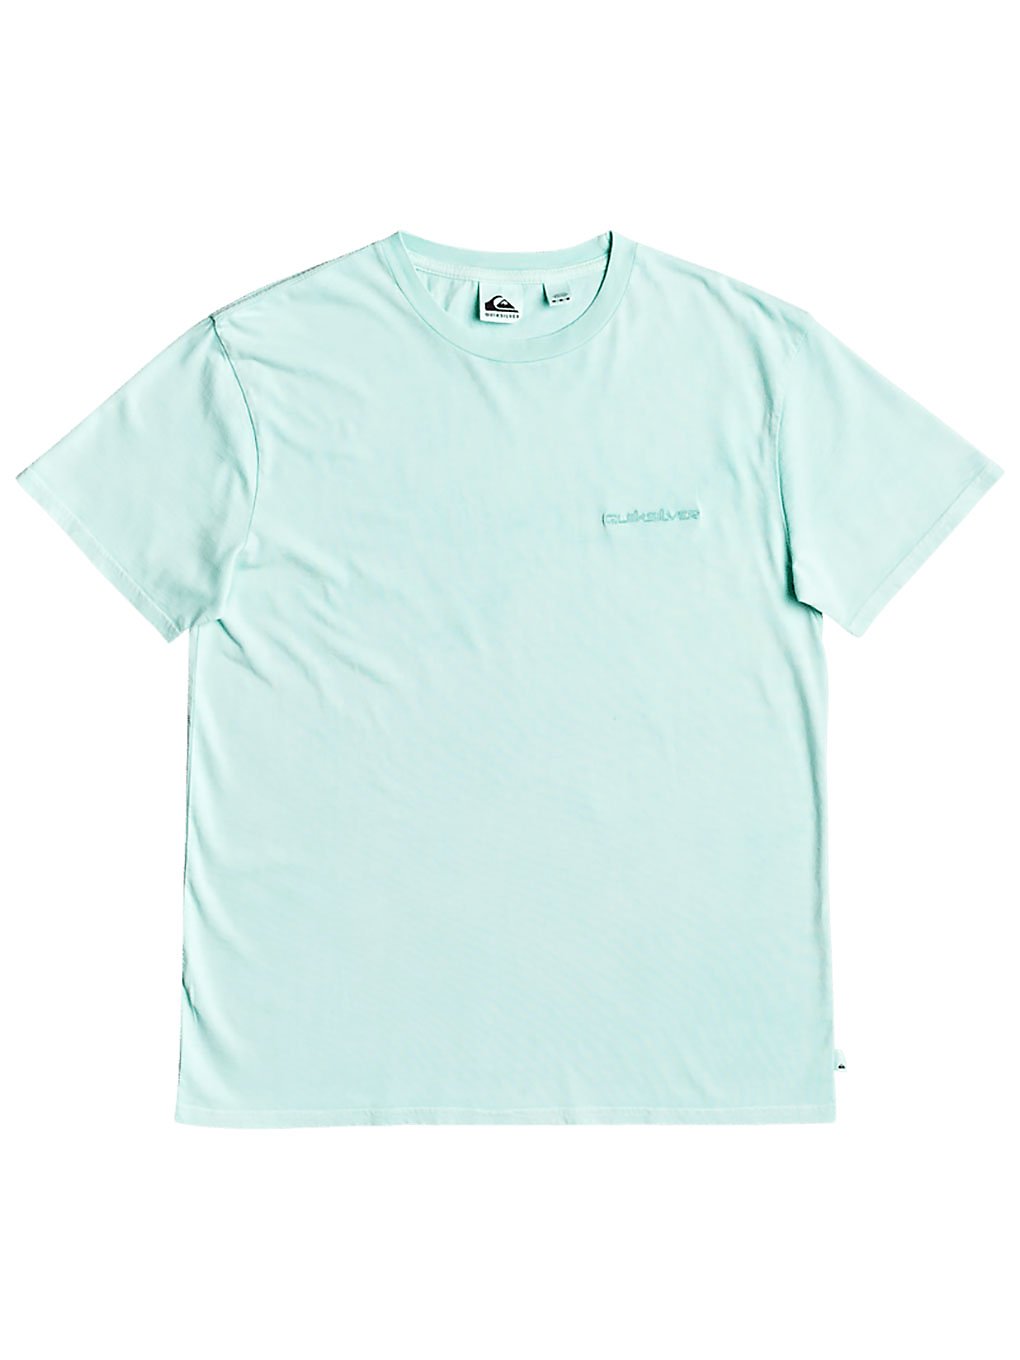 Quiksilver Acid Sun T-Shirt beach glass